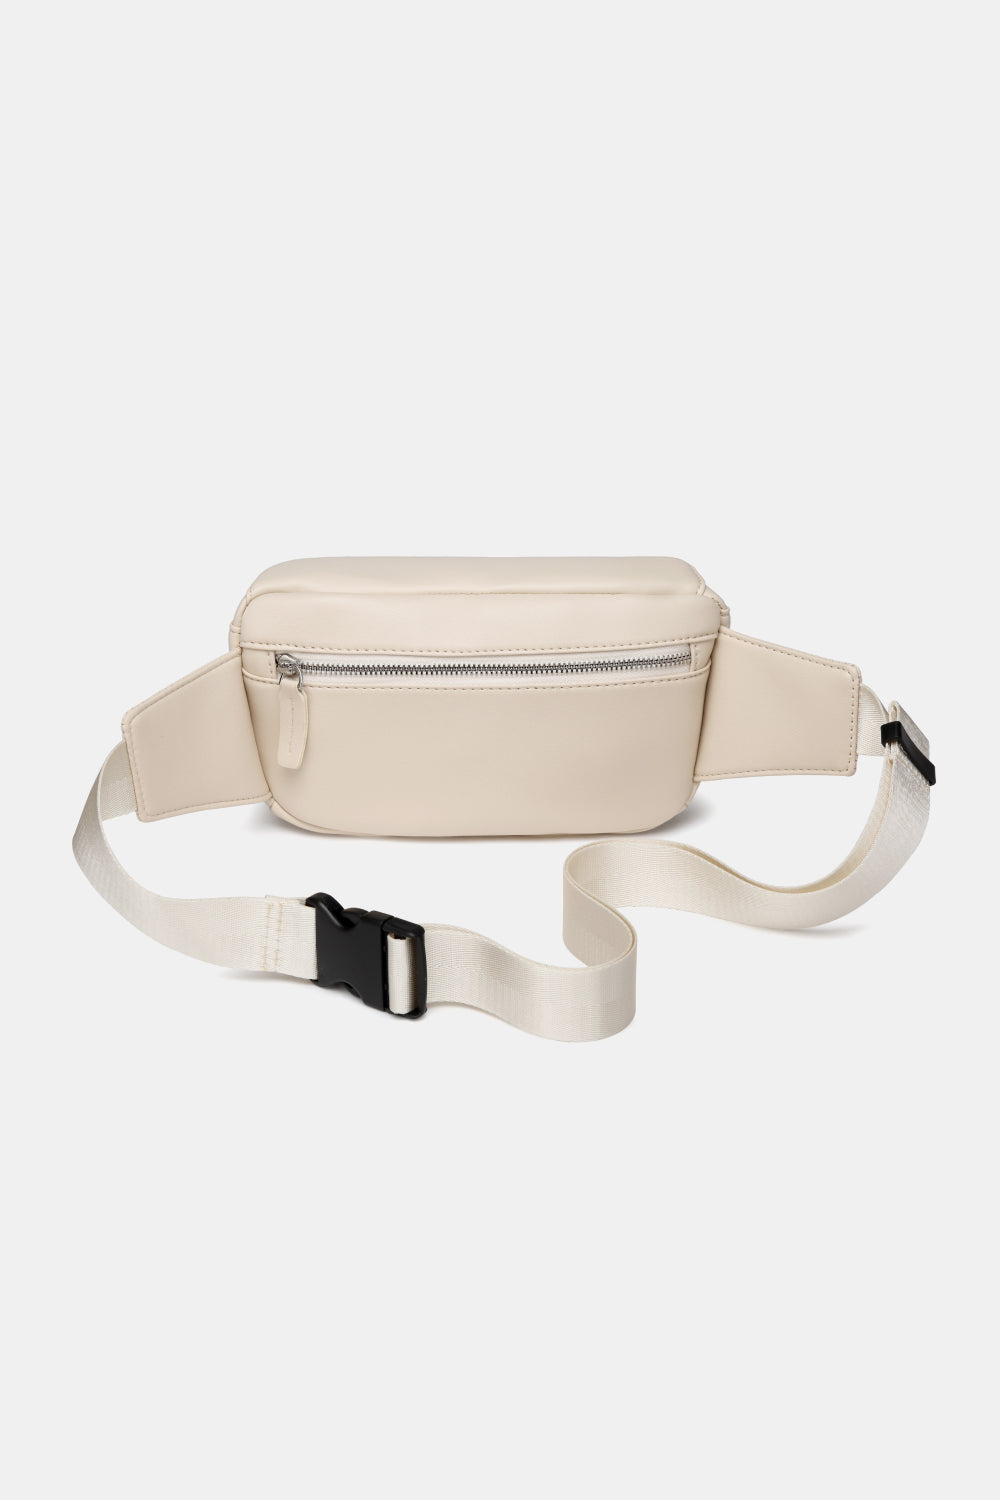 White Smoke Small PU leather Sling Bag Handbags